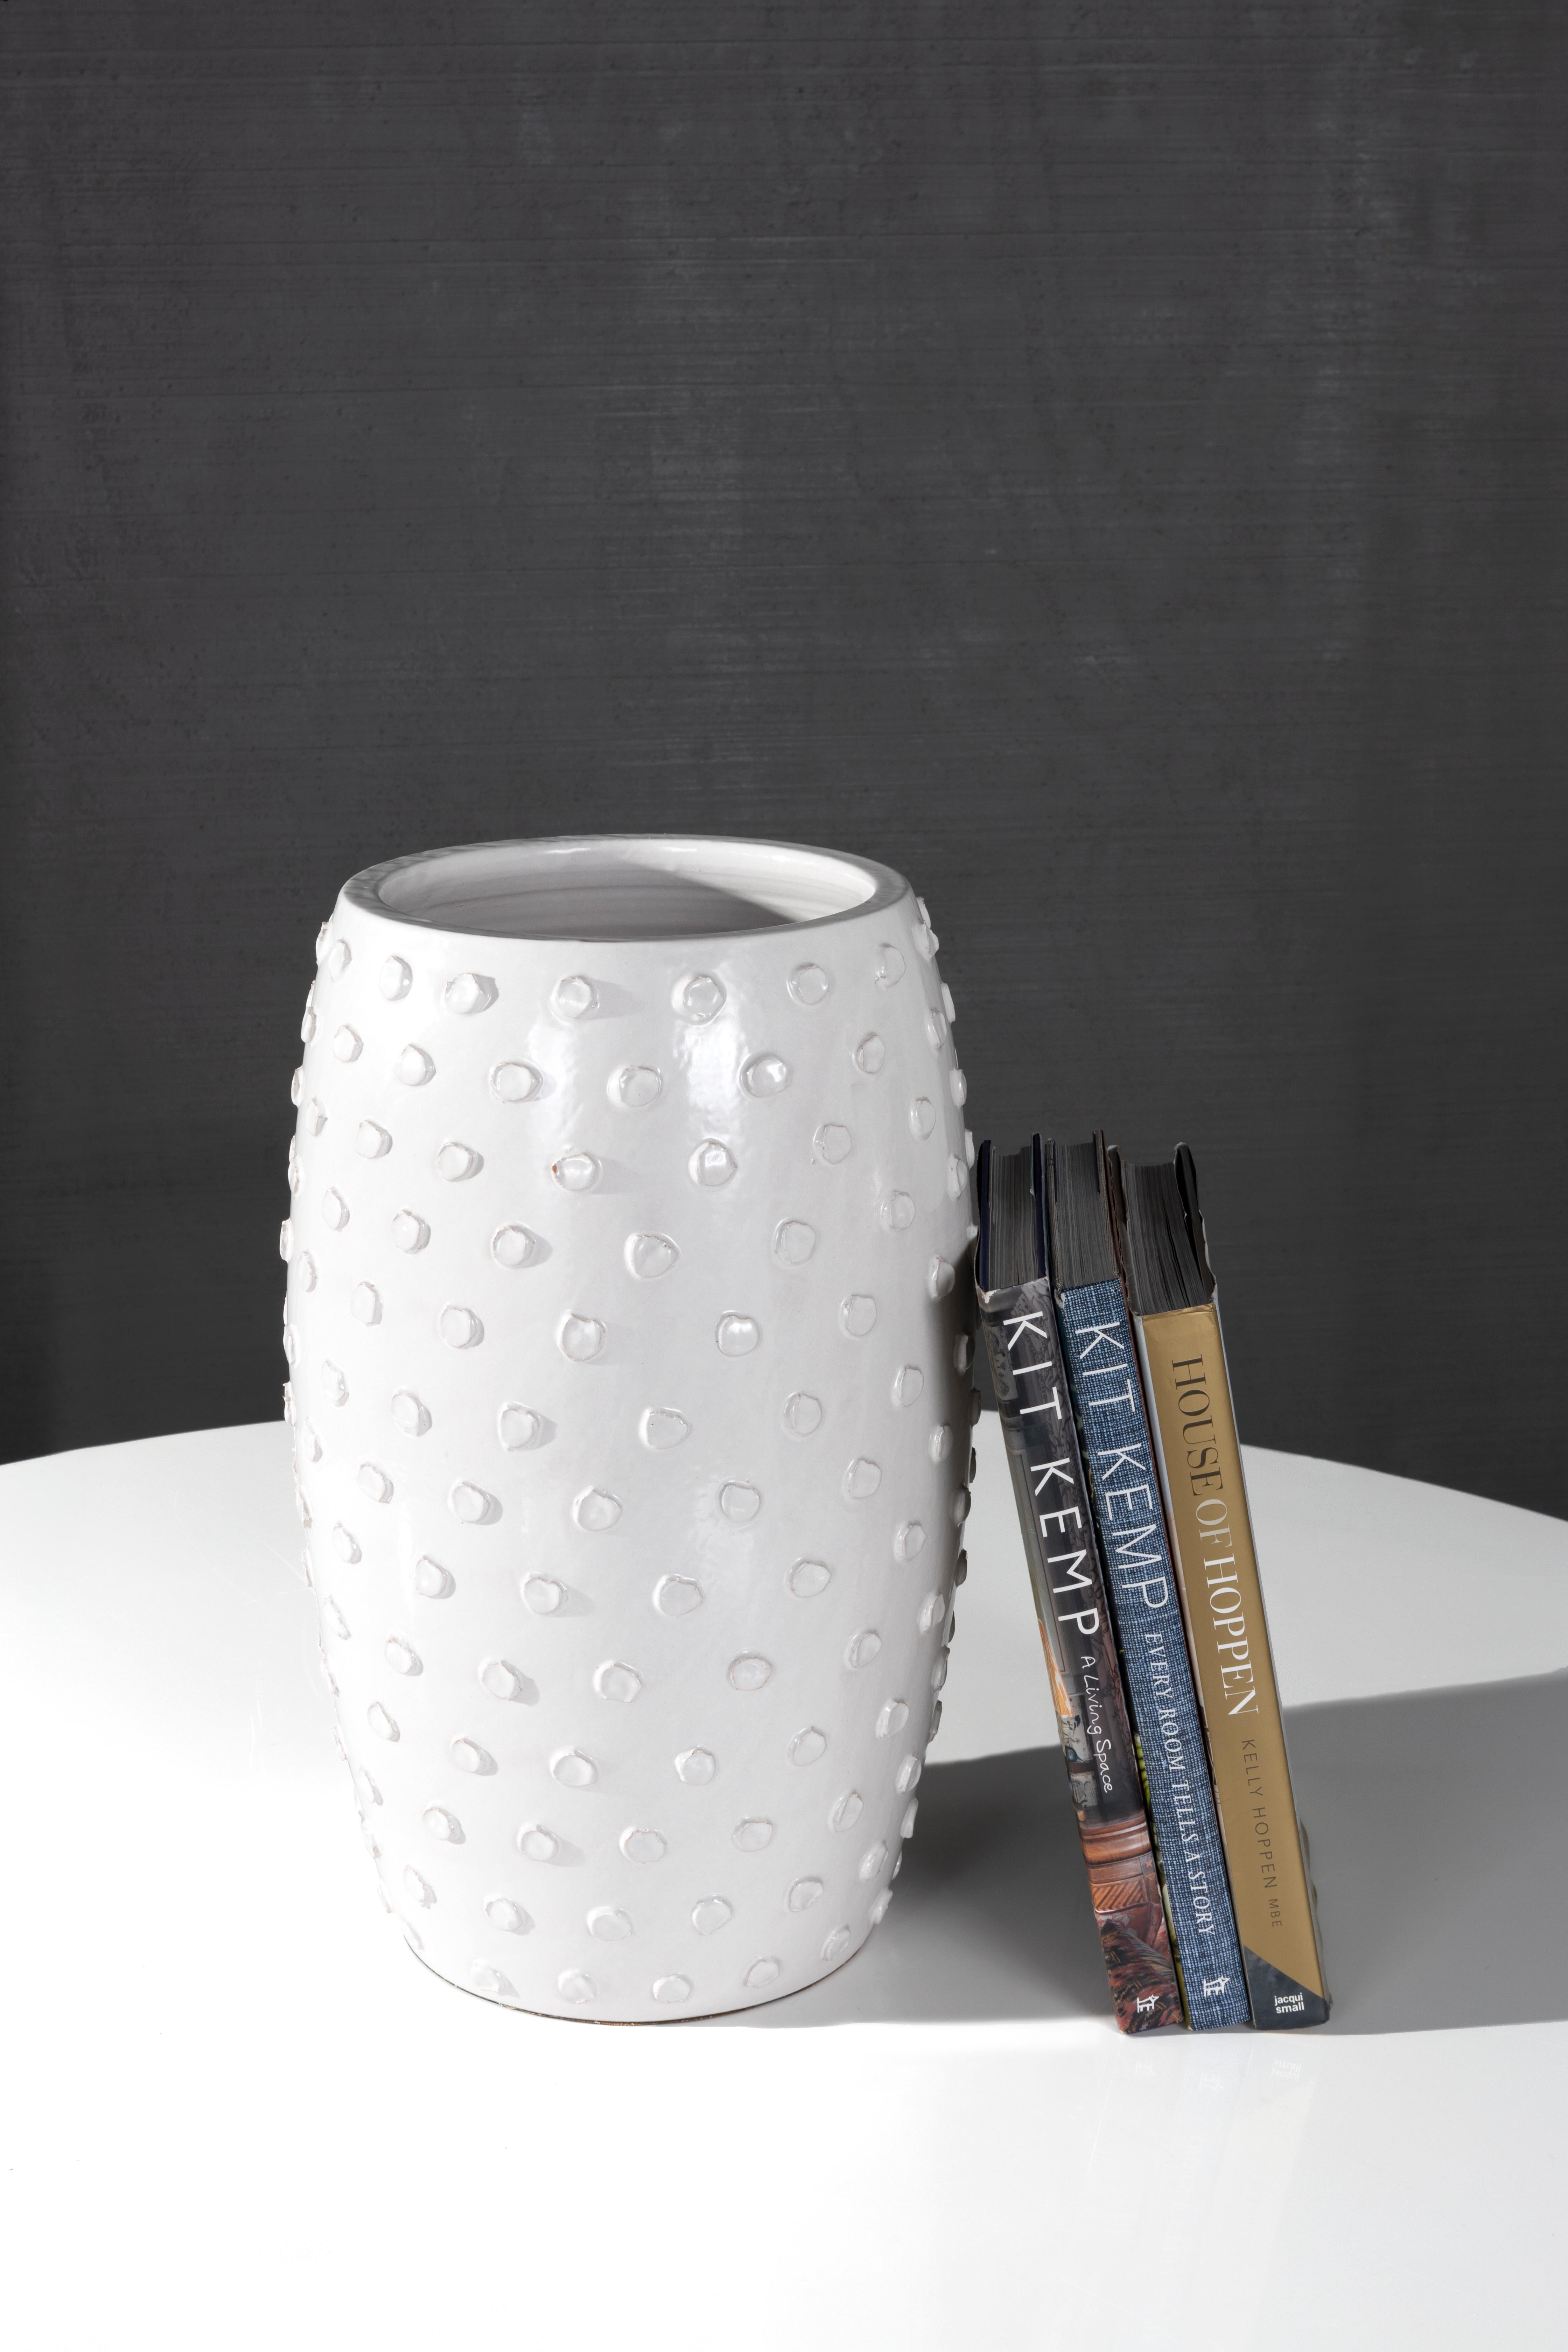 Le vase Boru, la dernière nouveauté de la ligne RENG, est un vase en terre cuite émaillée blanc cassé avec un motif à points inspiré de la lampe de table qui porte le même nom.

Toutes les pièces de la ligne RENG sont conçues à Dallas, au Texas,